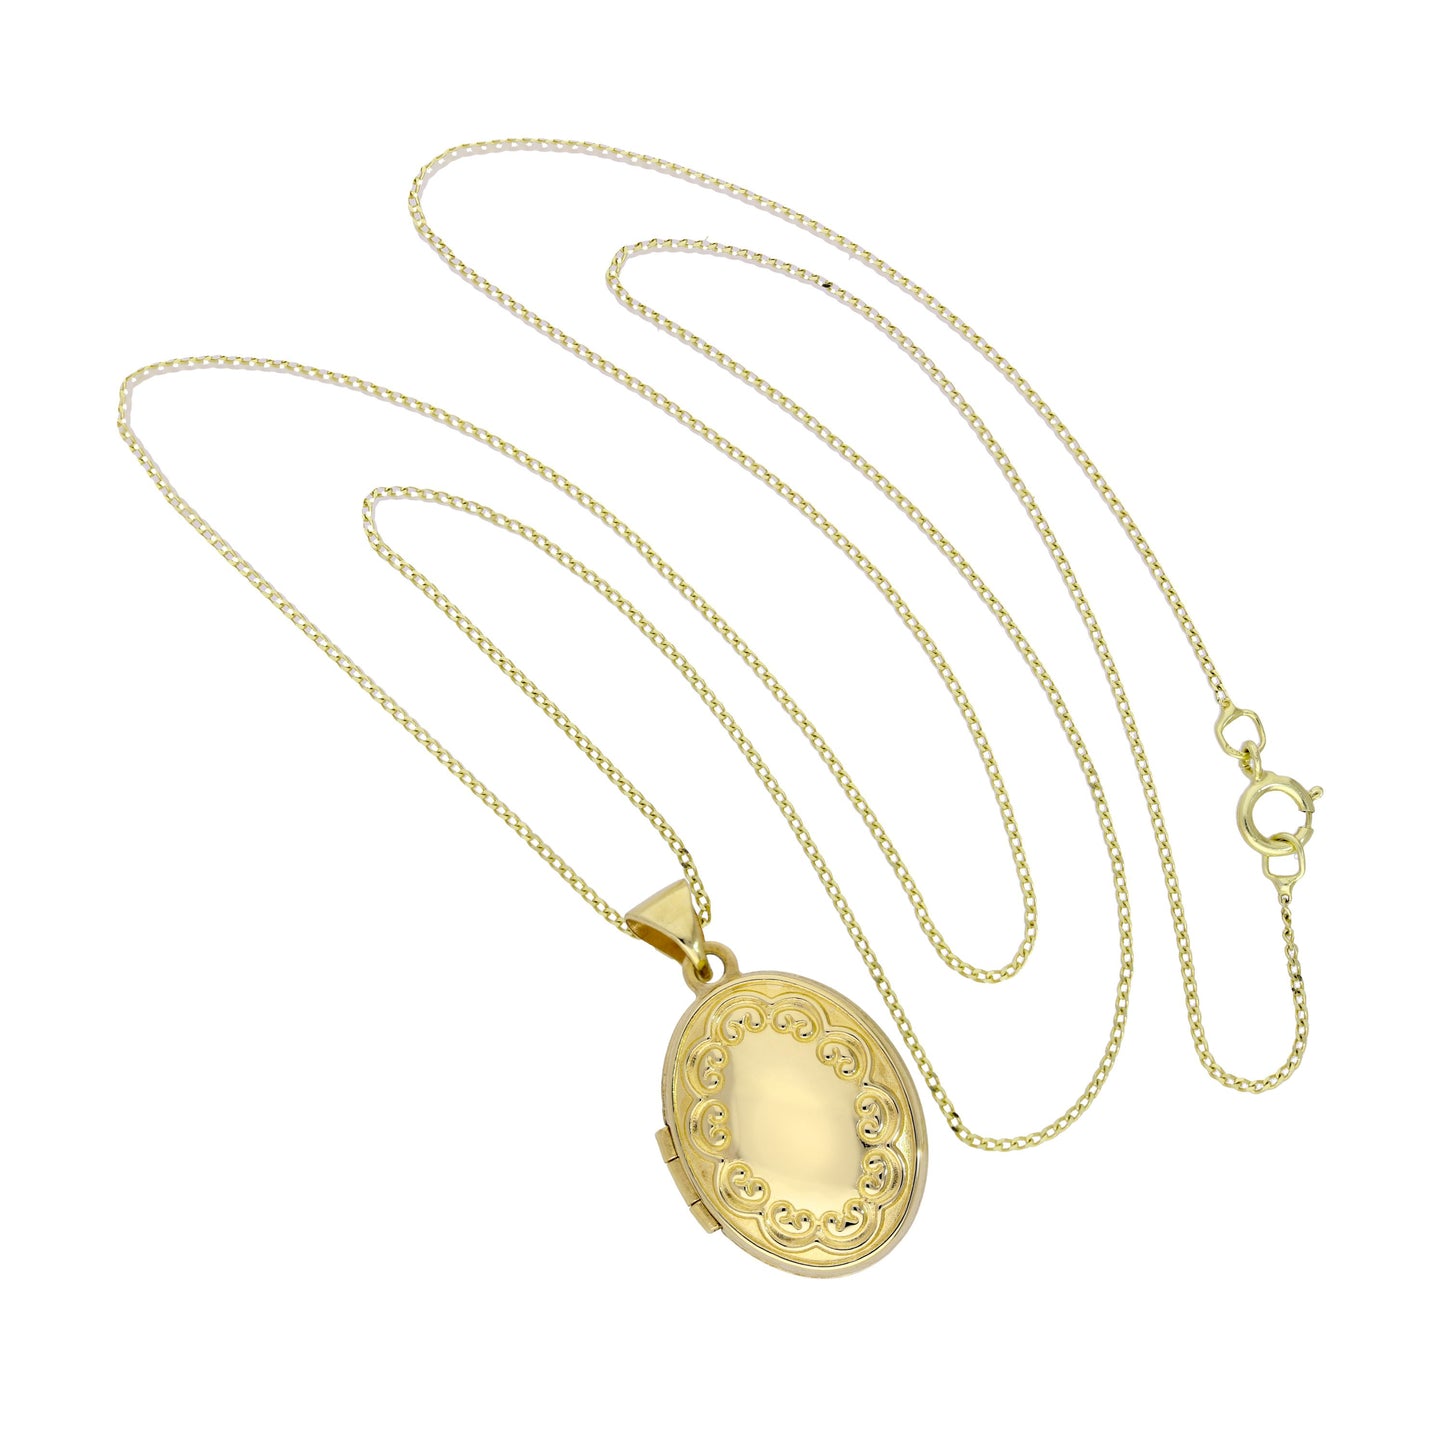 9 Karat Gold Oval Medaillon an Kette mit Blumen Muster an Kette 40,5 - 45,5cm